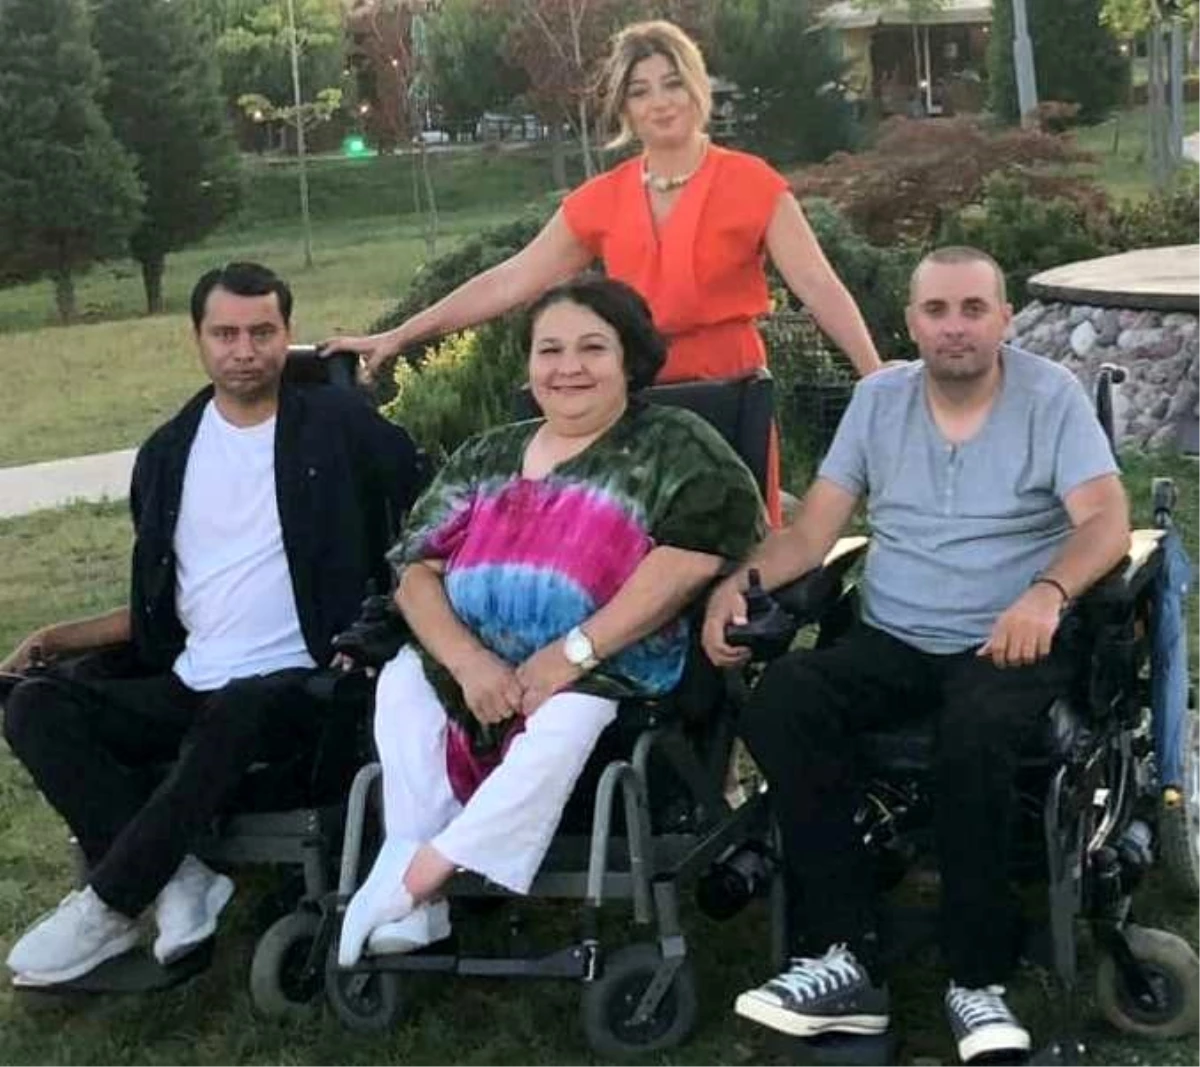 Büyükçekmece Engelli Çalıştayını 3 engelli vatandaş düzenleyecek